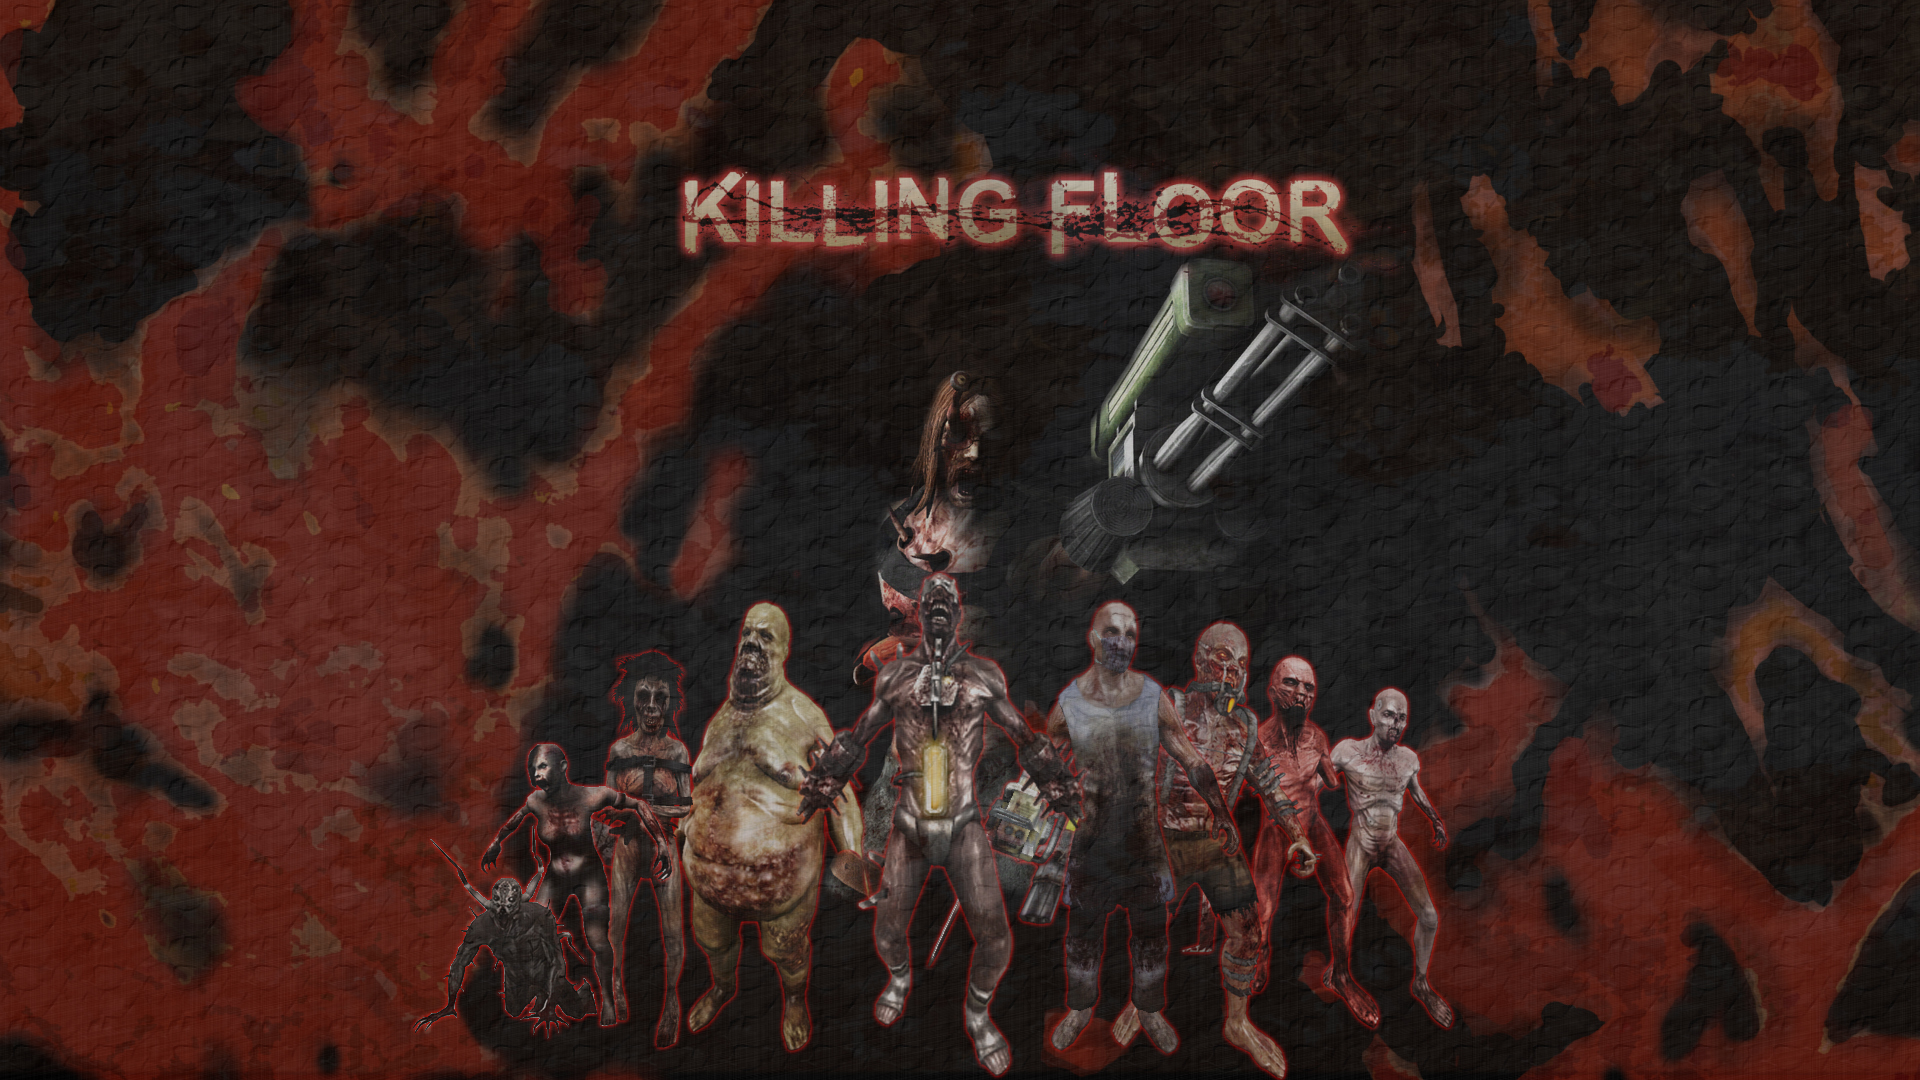 Killing Floor 2 Ign Wallpapers